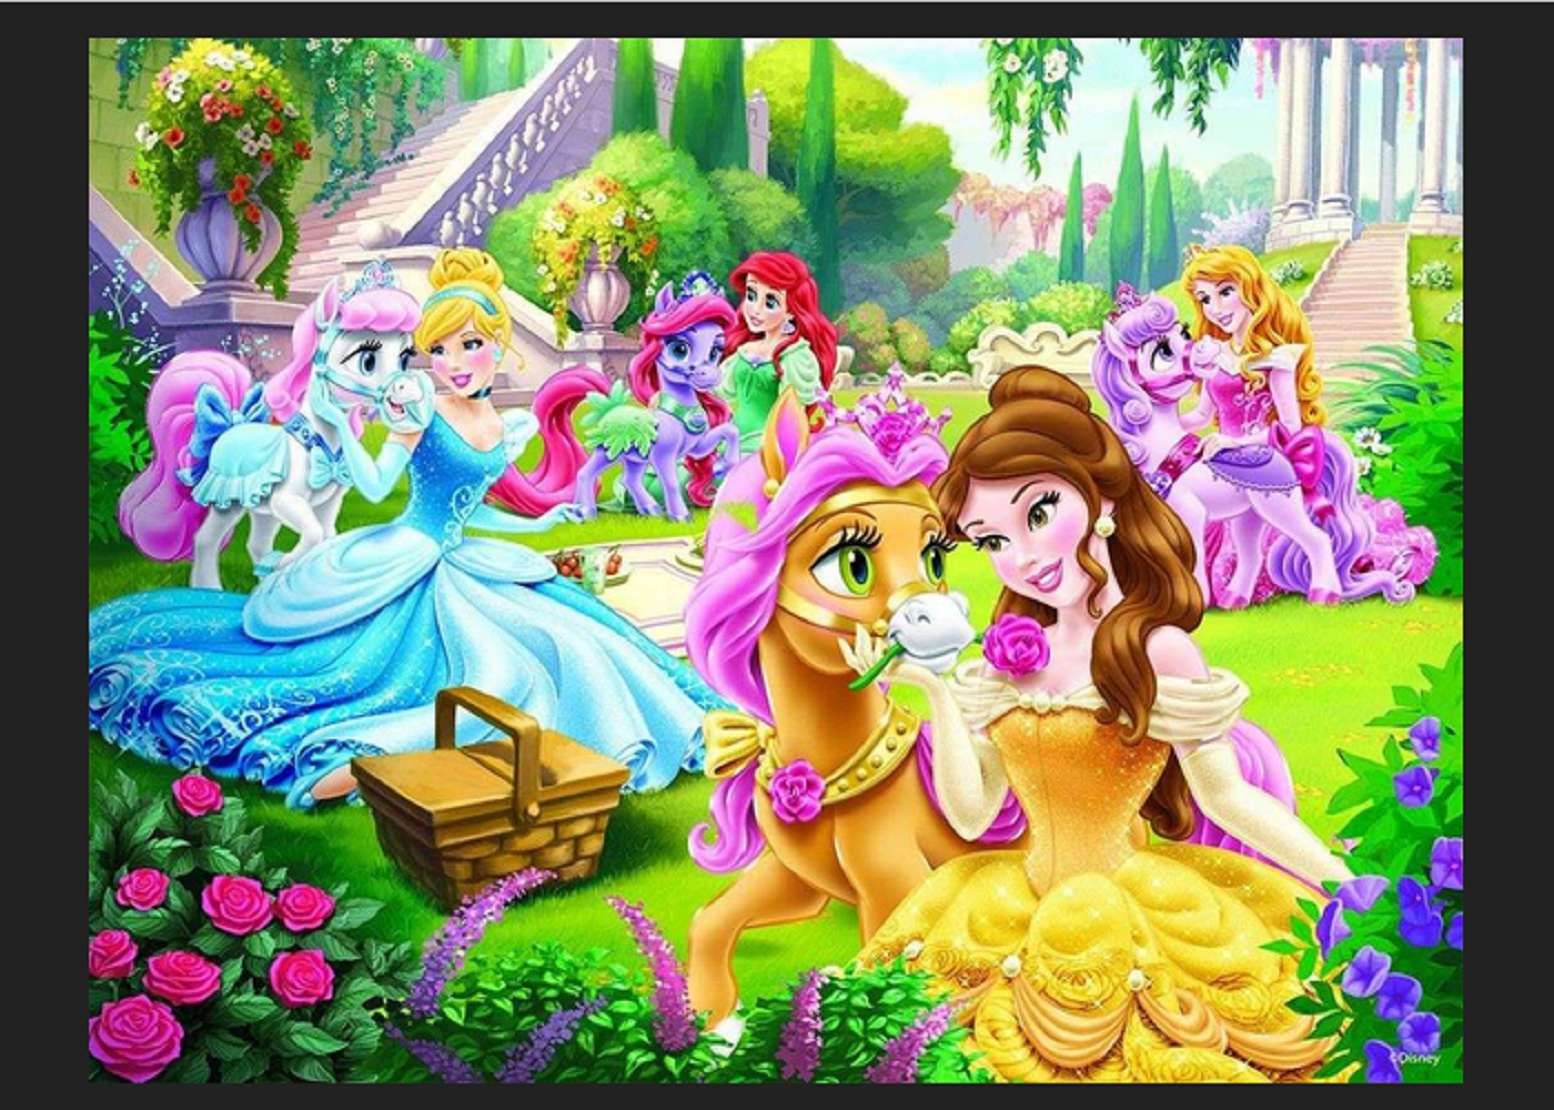 πριγκίπισσες σε έναν όμορφο κήπο παζλ online